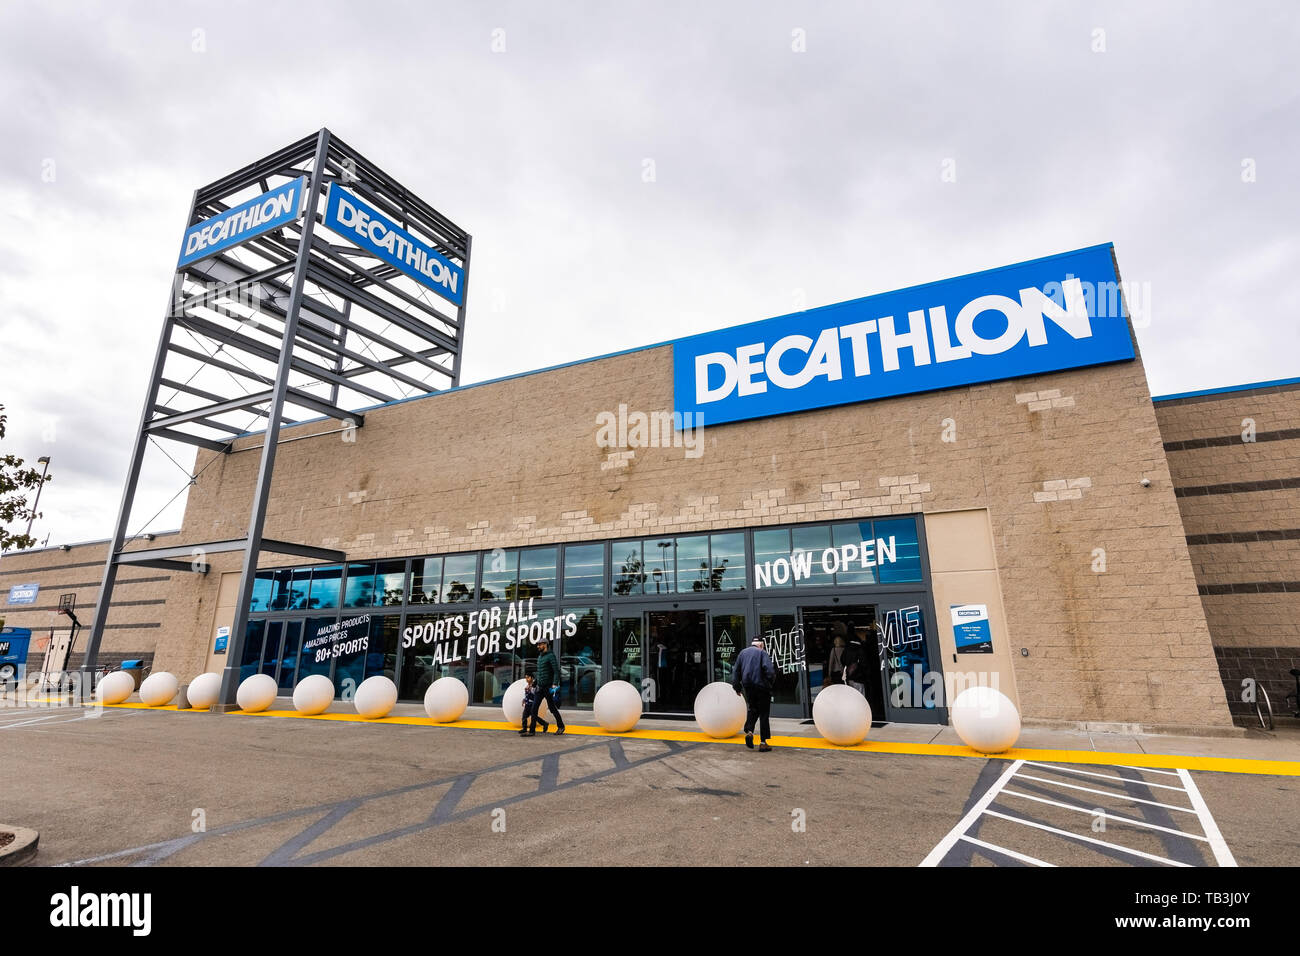 26 mai 2019 Emeryville / CA / USA - Vue extérieure de Decathlon Articles de sport magasin phare, le premier ouvert dans la région de la baie de San Francisco, près de Oakl Banque D'Images